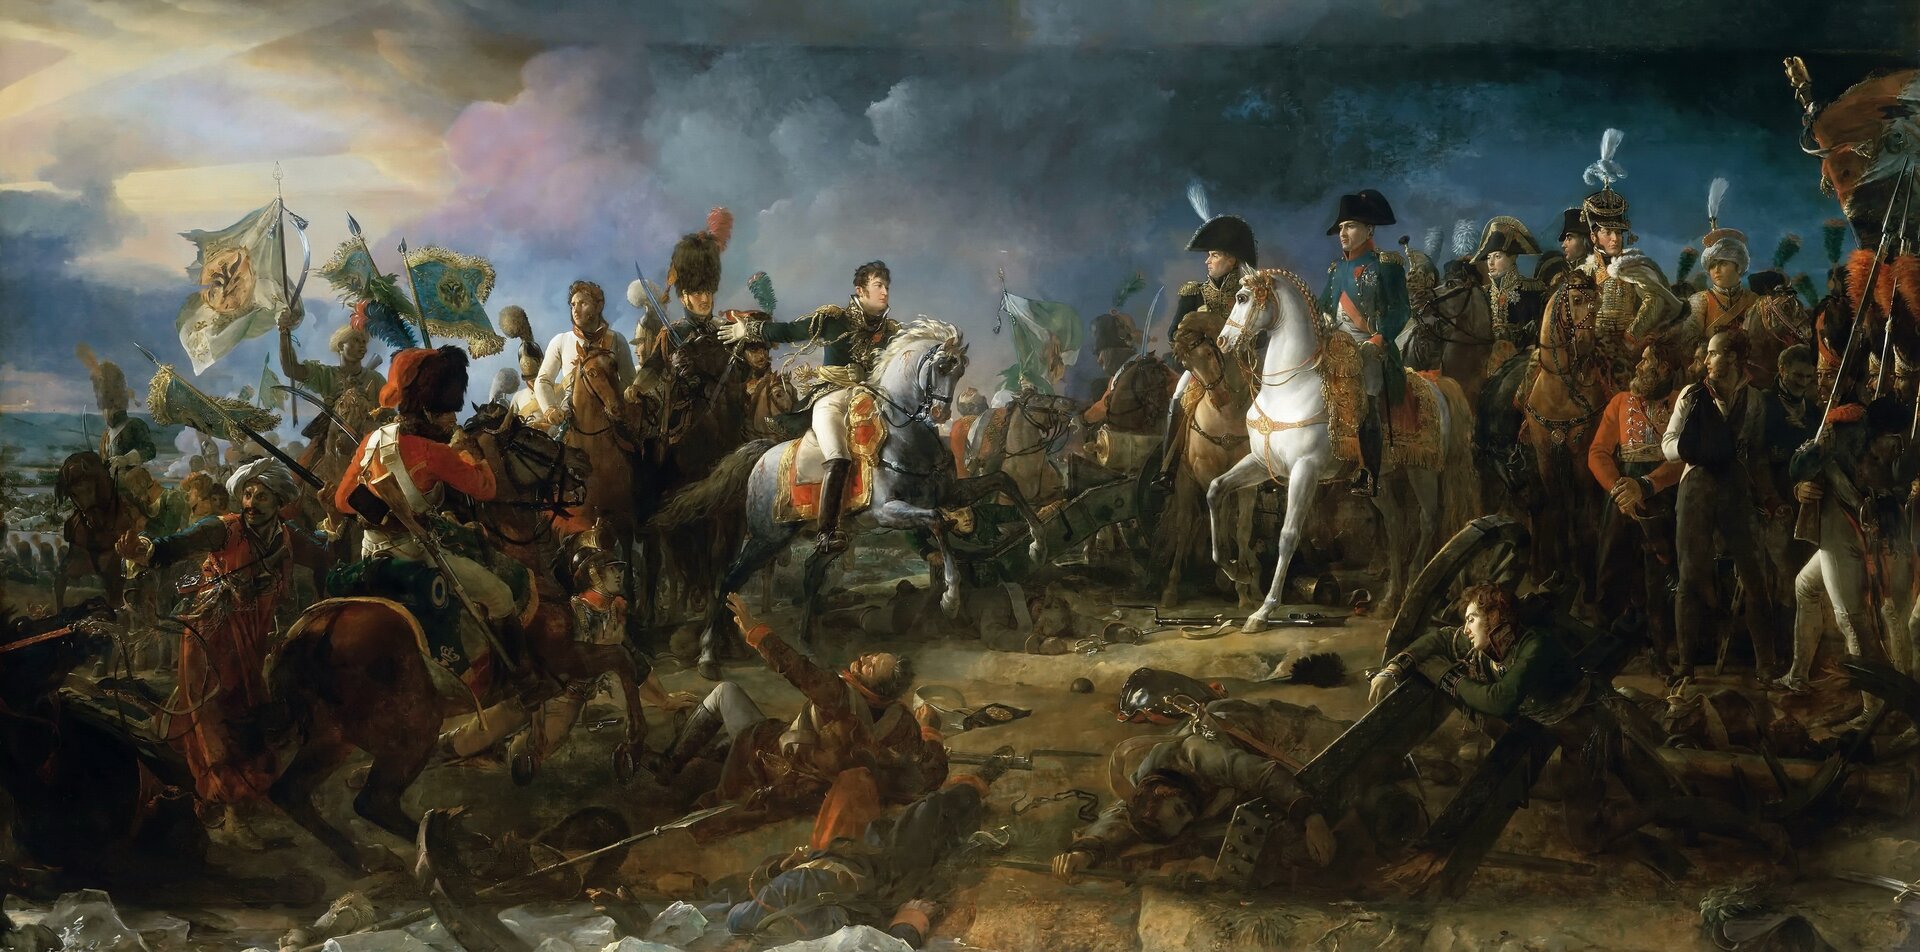 Ilustracja przedstawia żołnierzy dwóch różnych armii, stojących na wzgórzu. Przywódcy siedzą na koniach. Wokół leżą ciała zabitych.